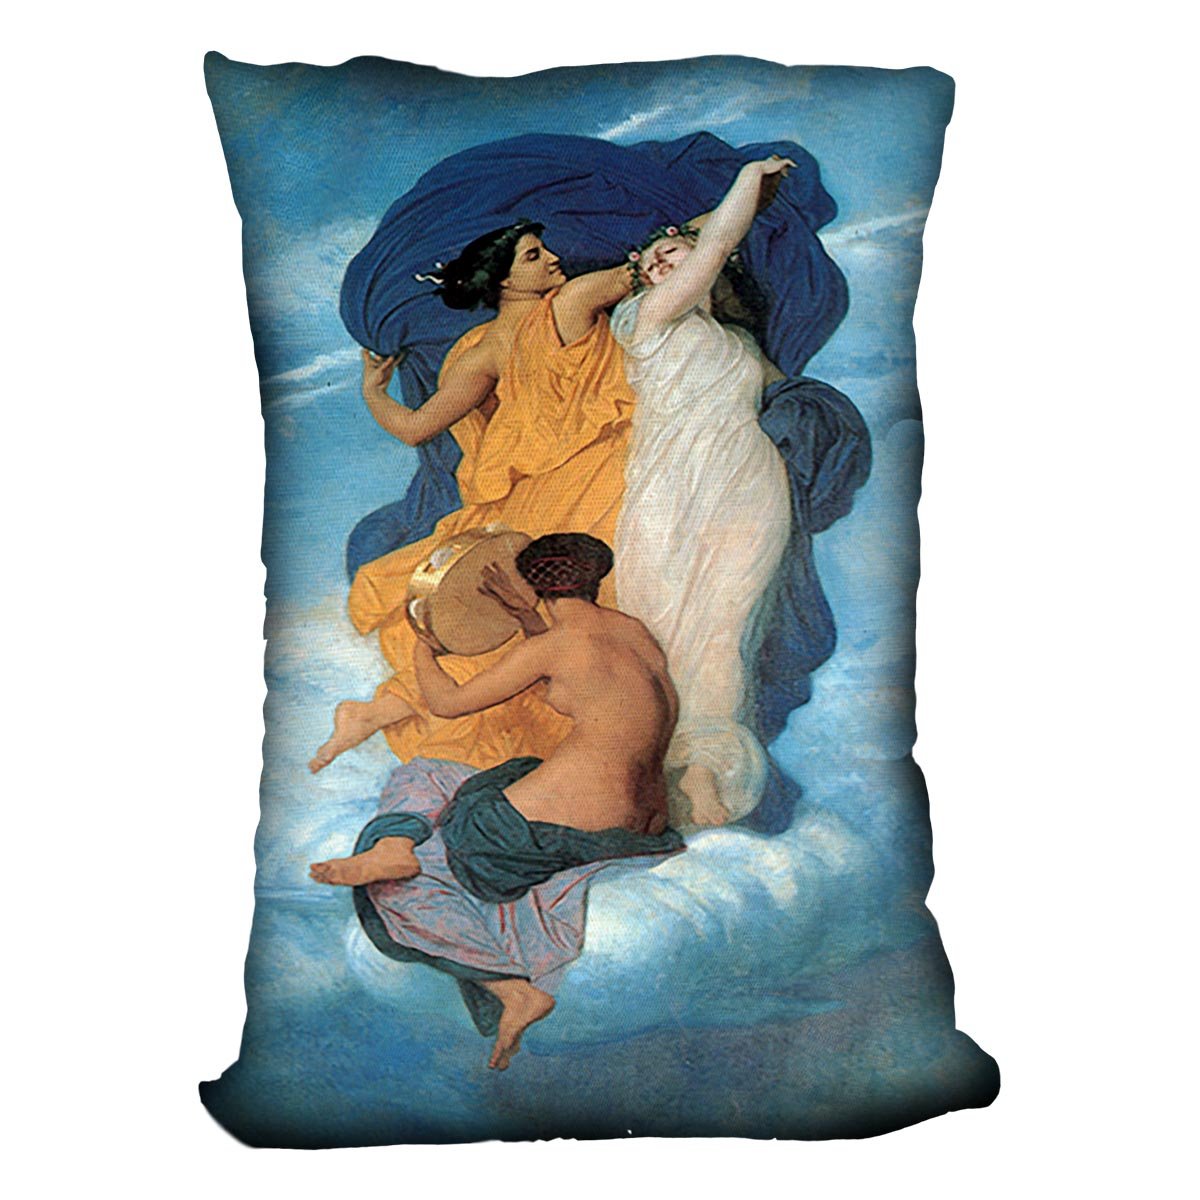 The Dance By Bouguereau Throw Pillow